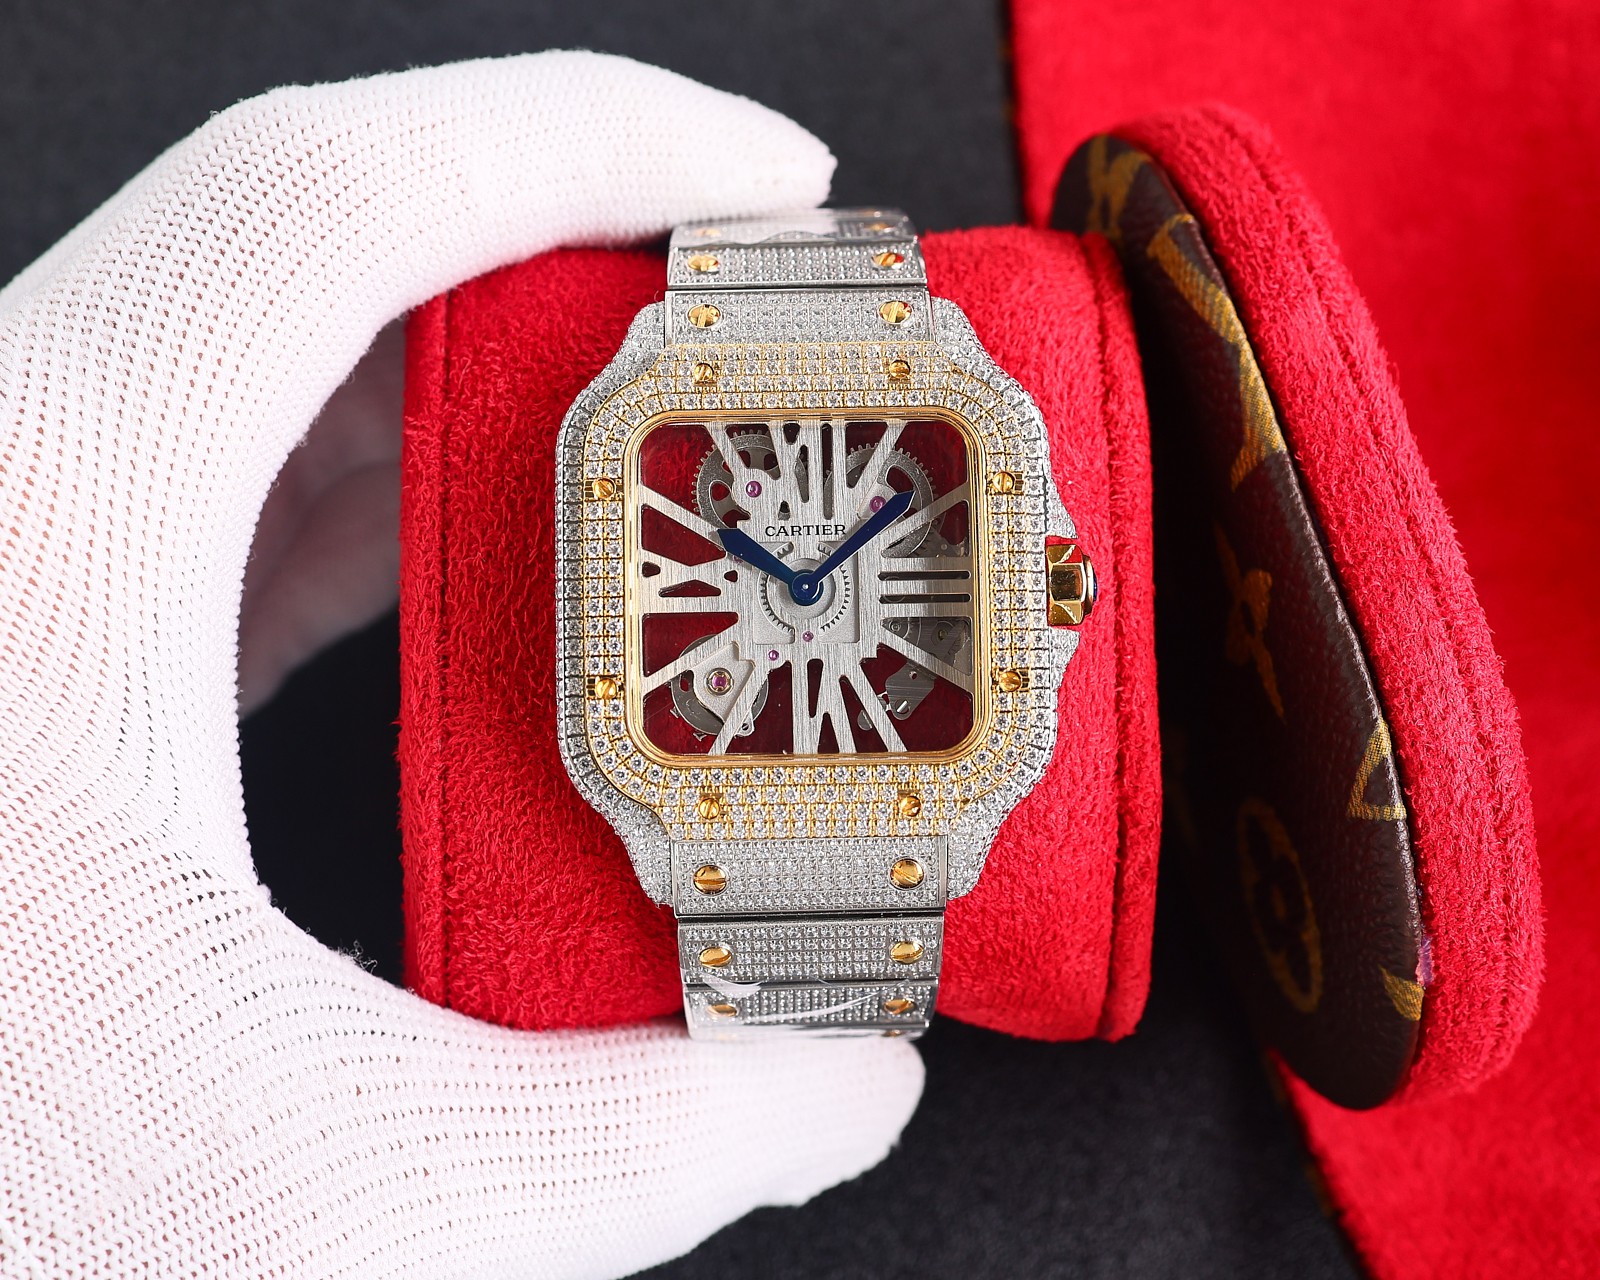 CARTIERカルティエ 腕時計 似てるスーパーコピー フランス 薄いワッチ レザー 四角い時計 スチールバンド_3